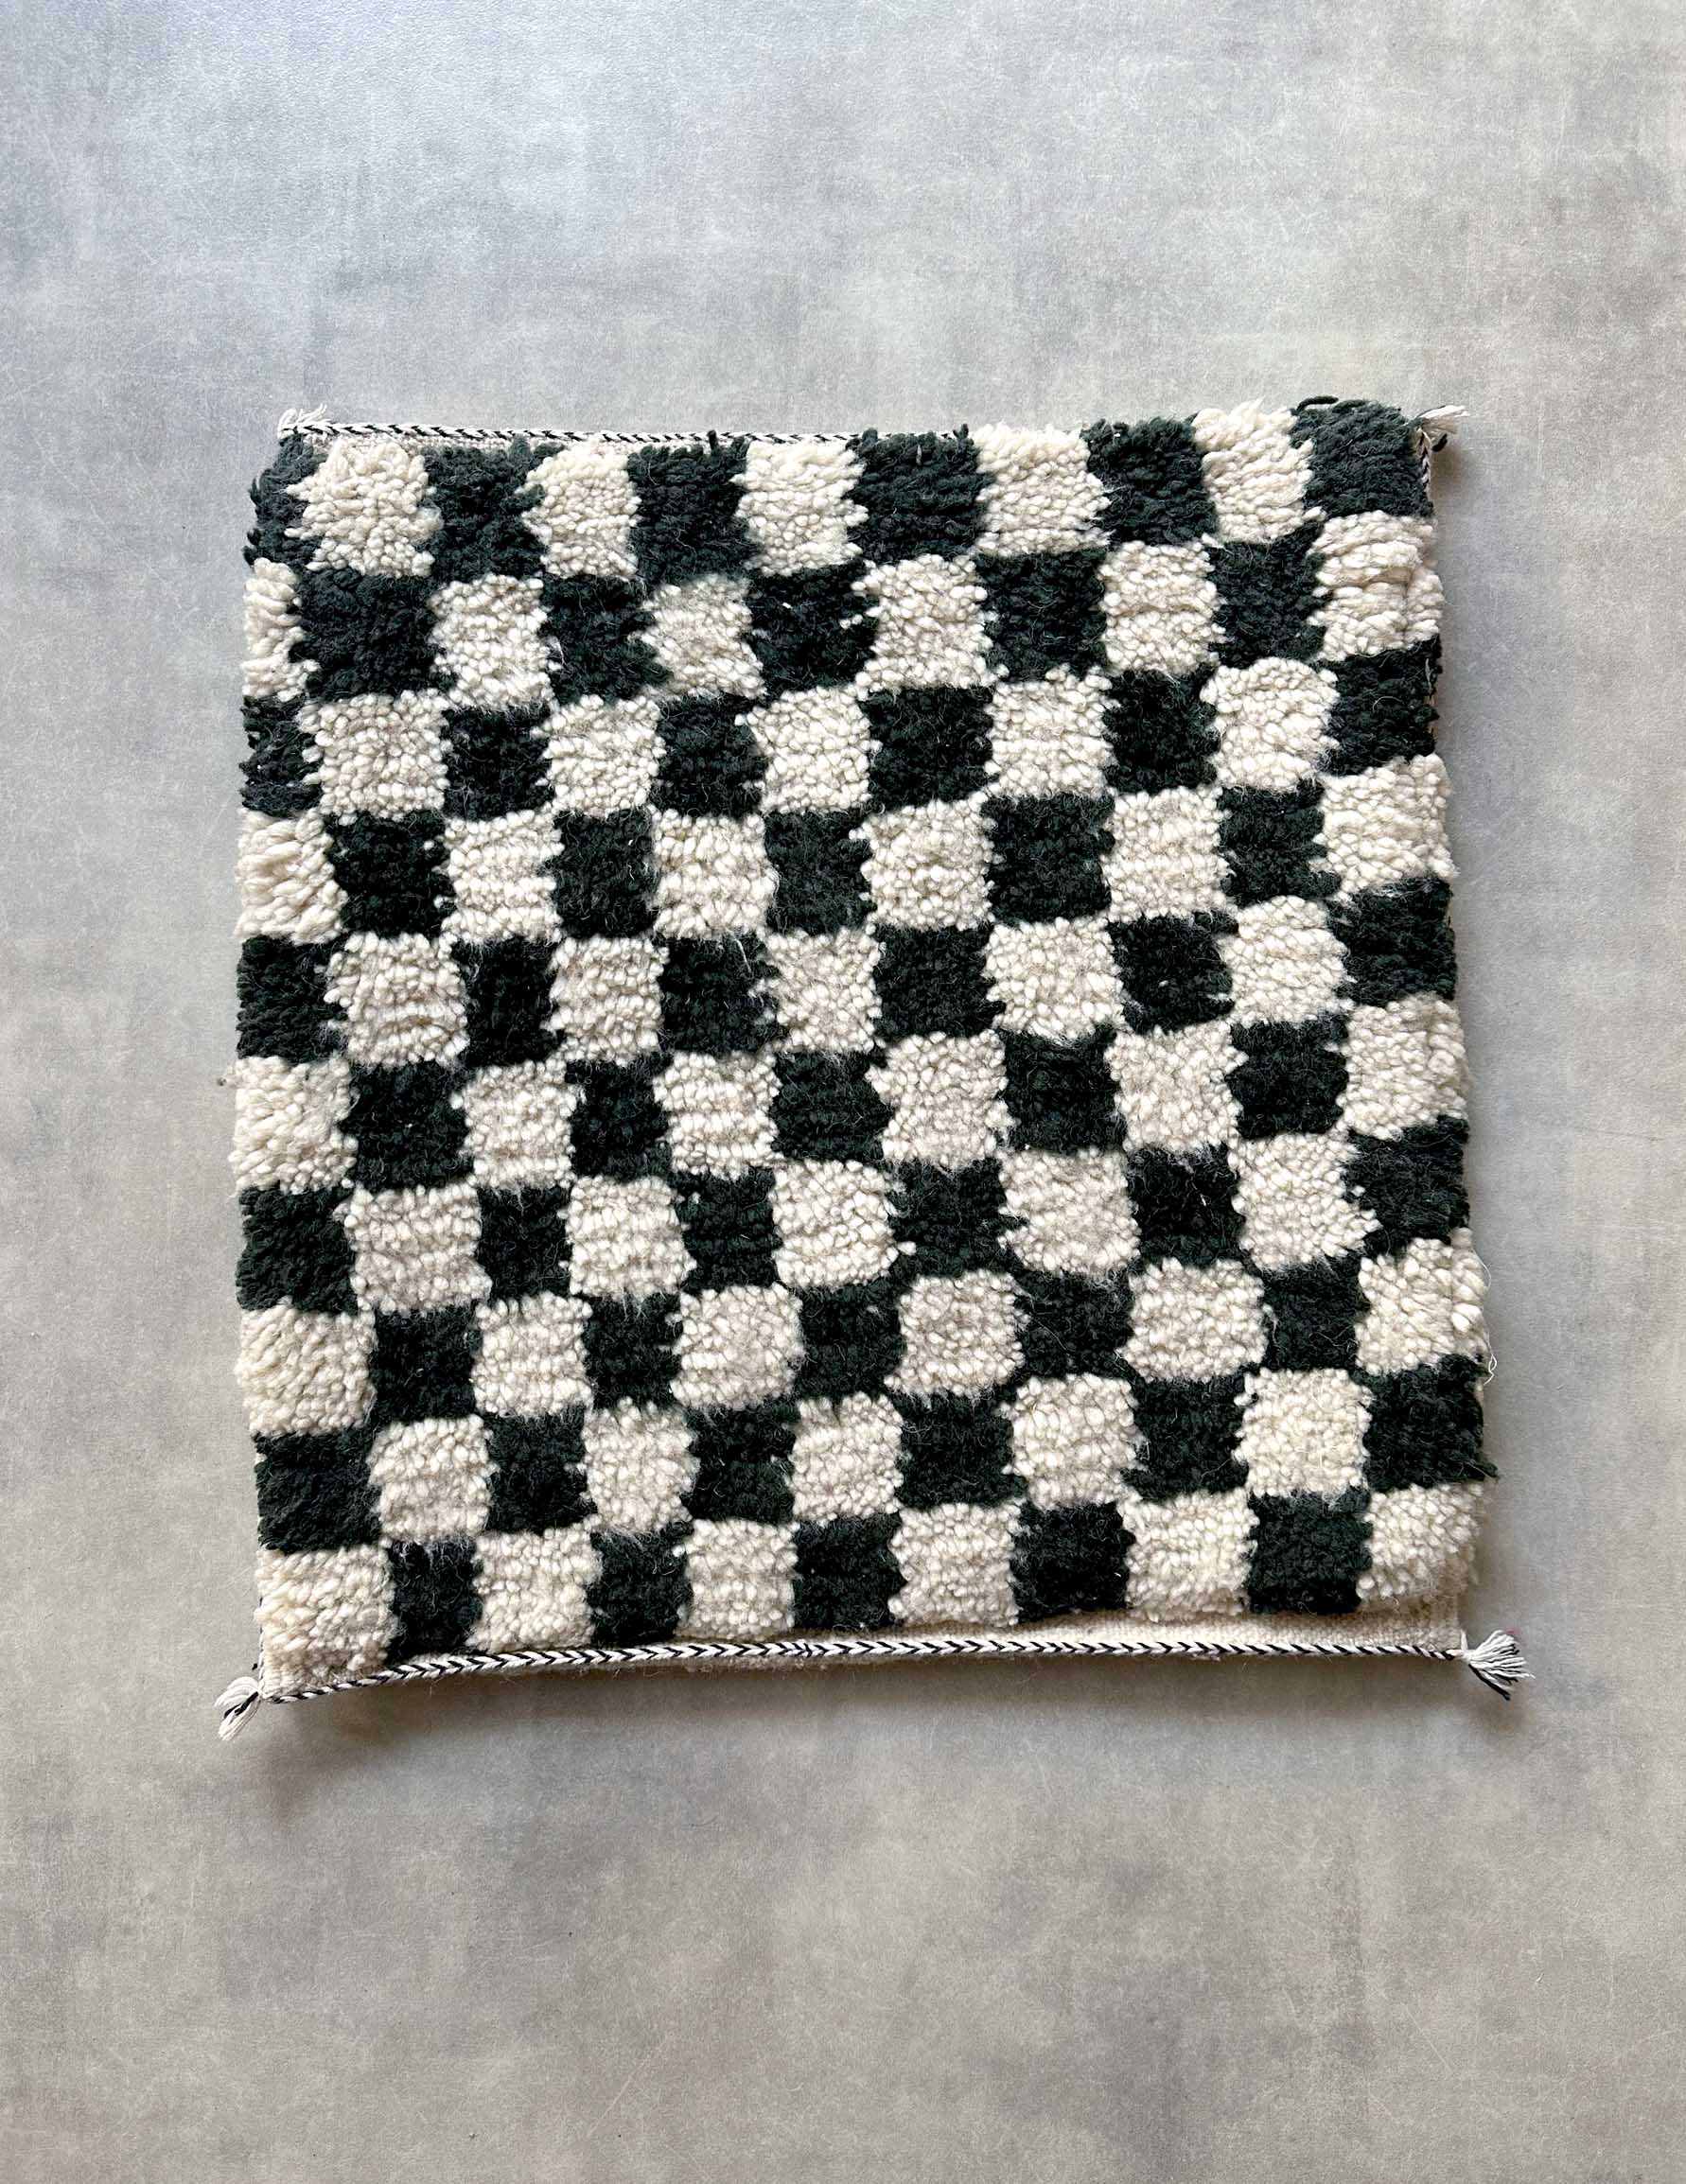 Checker cushion cover